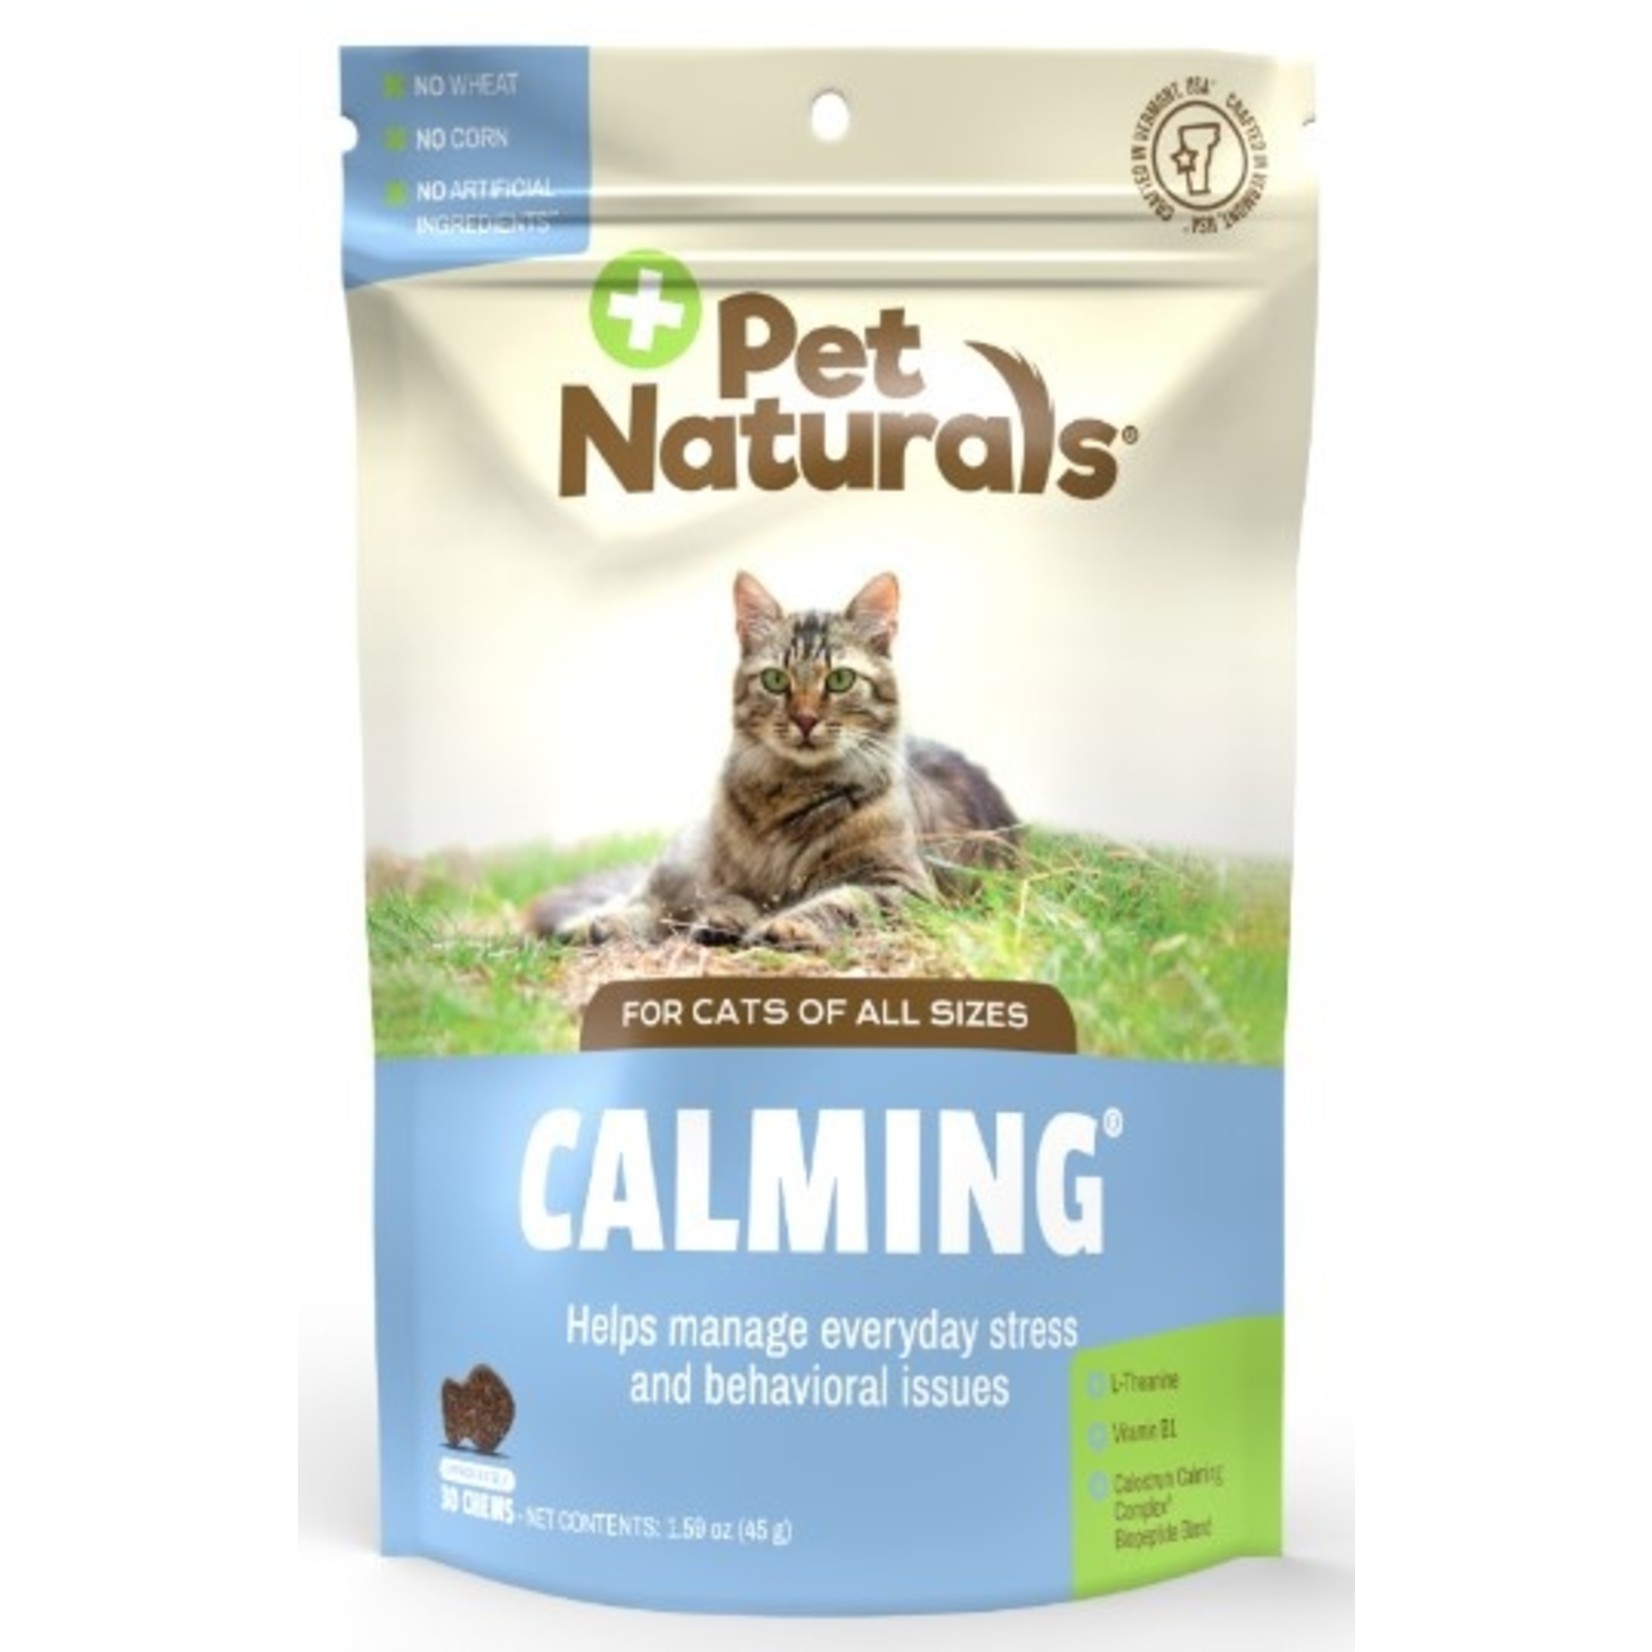 Pet Naturals / VetriScience PetNaturals Calming Cat Supplement Chews 30ct